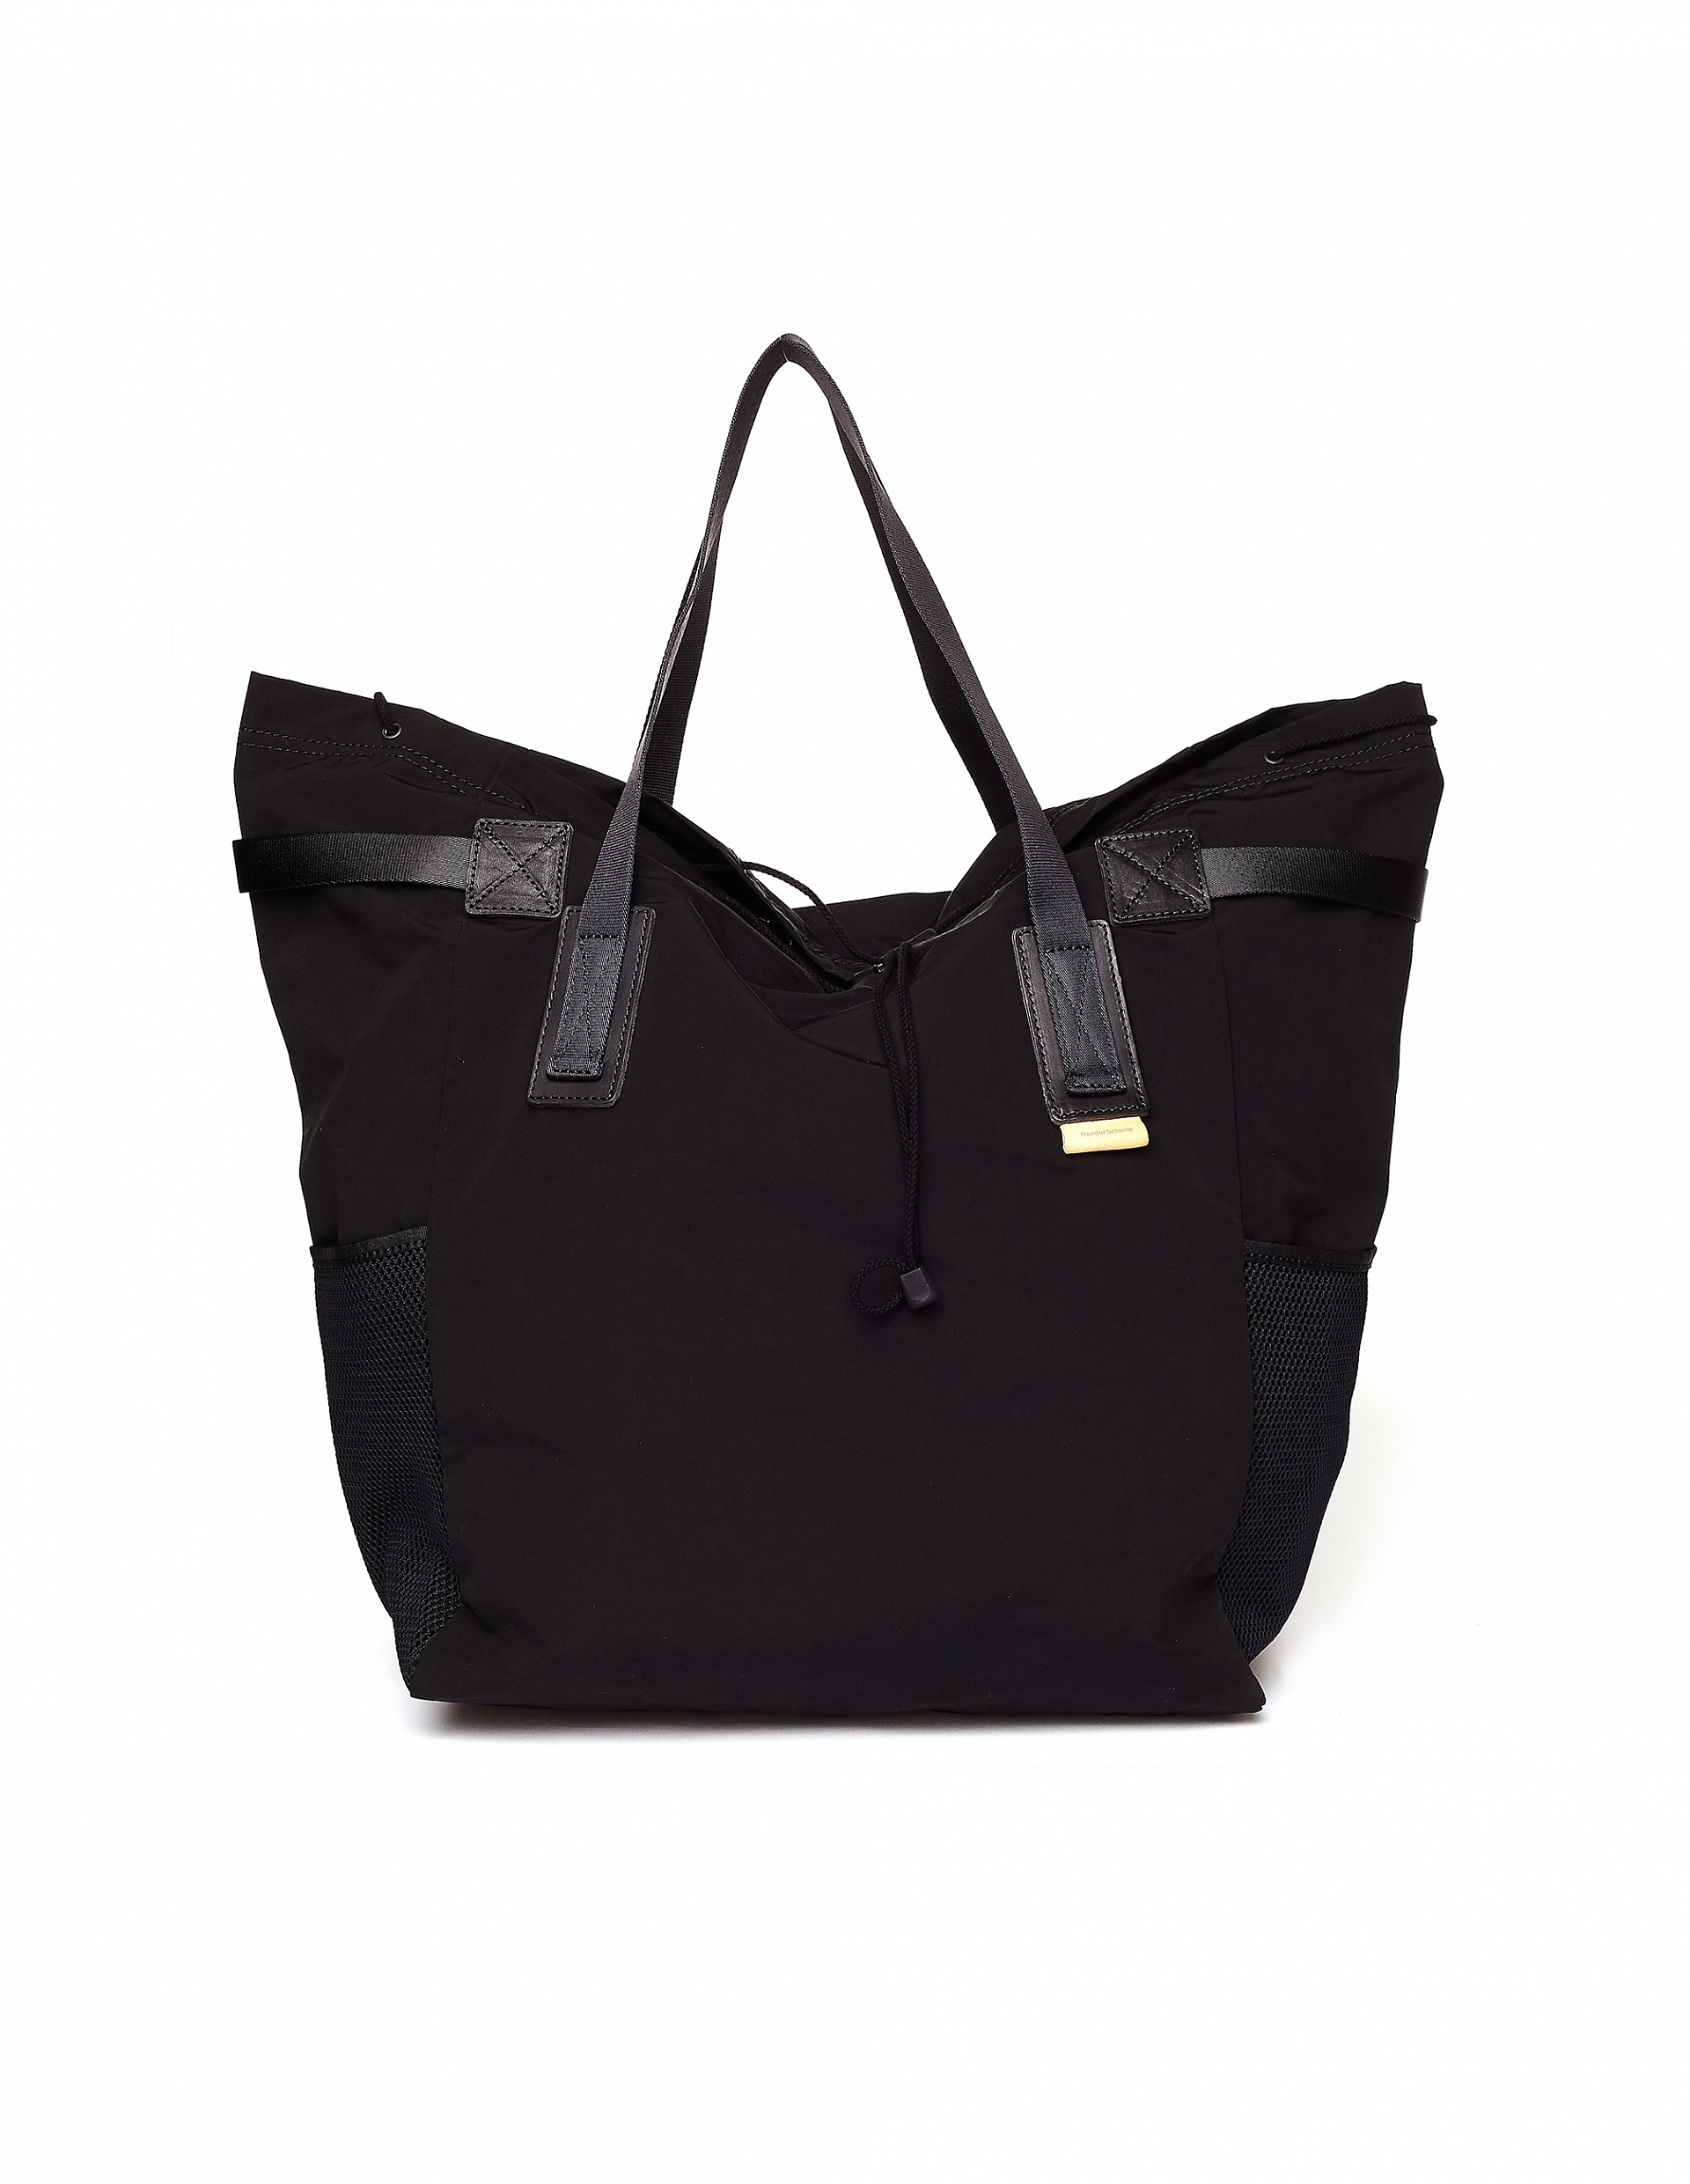 Buy Hender Scheme women black functional tote bag for $415 online on